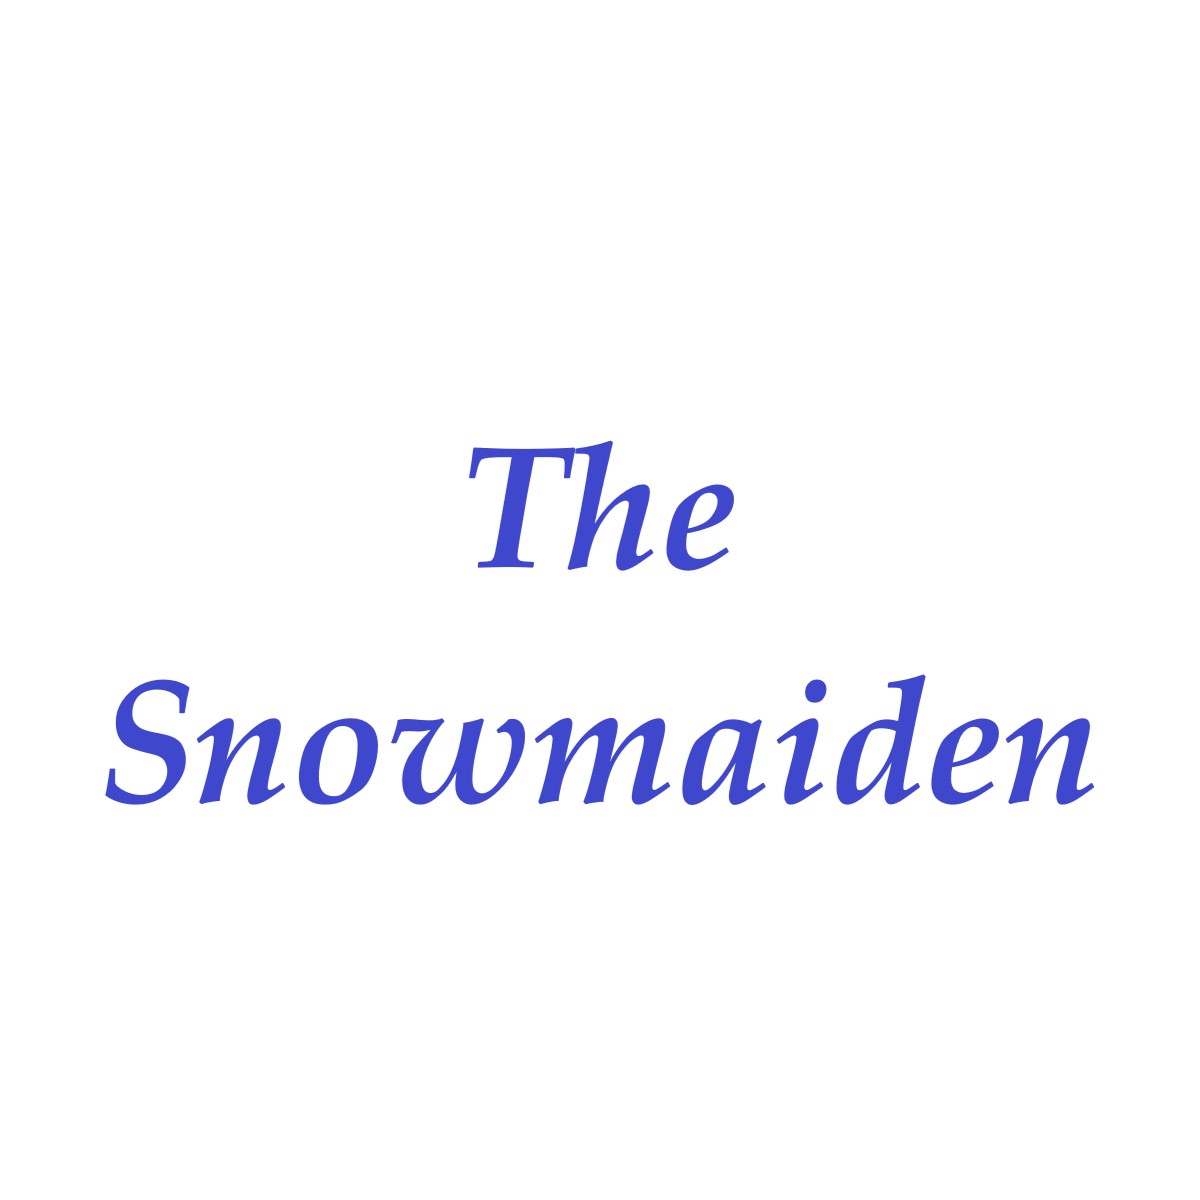 Snowmaiden